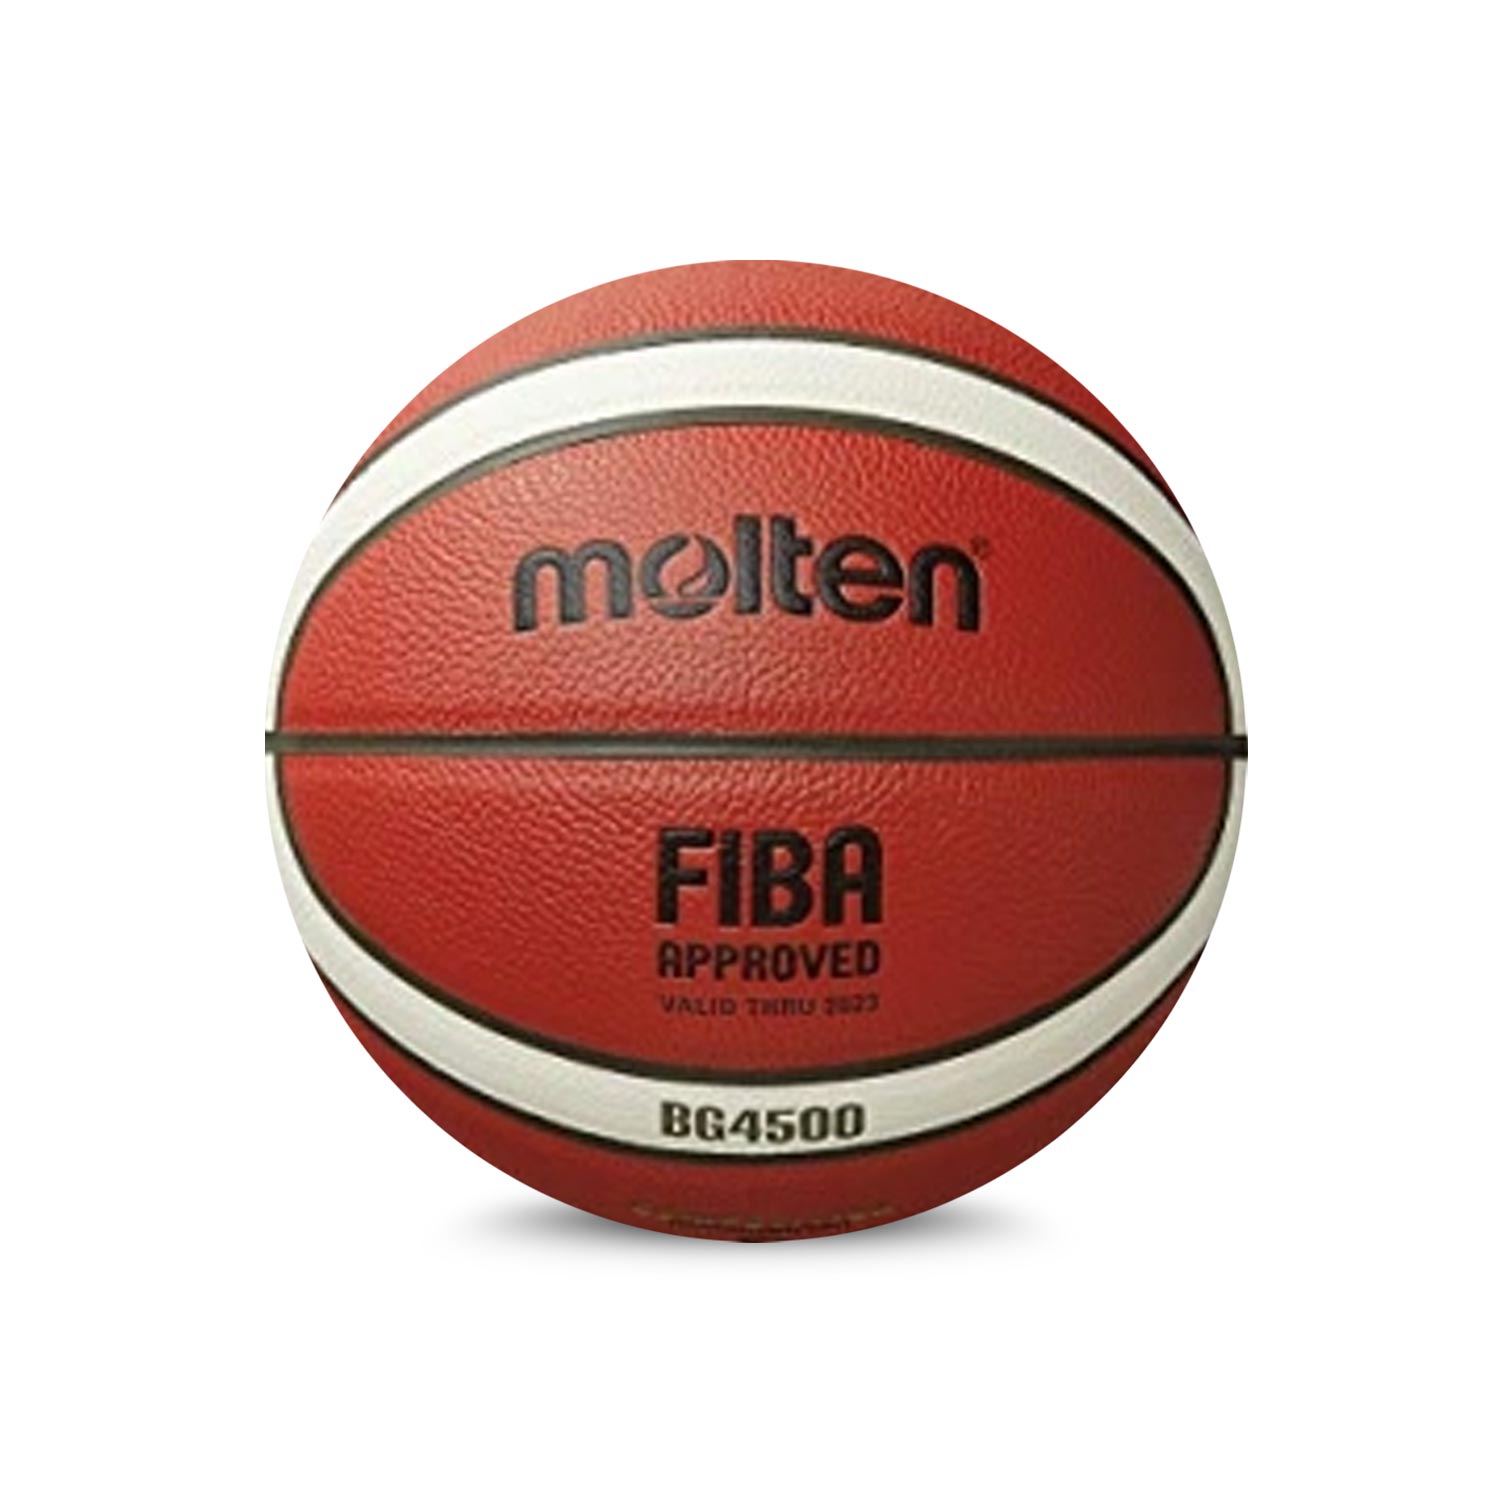 Comprar Balon baloncesto Molten BG4500